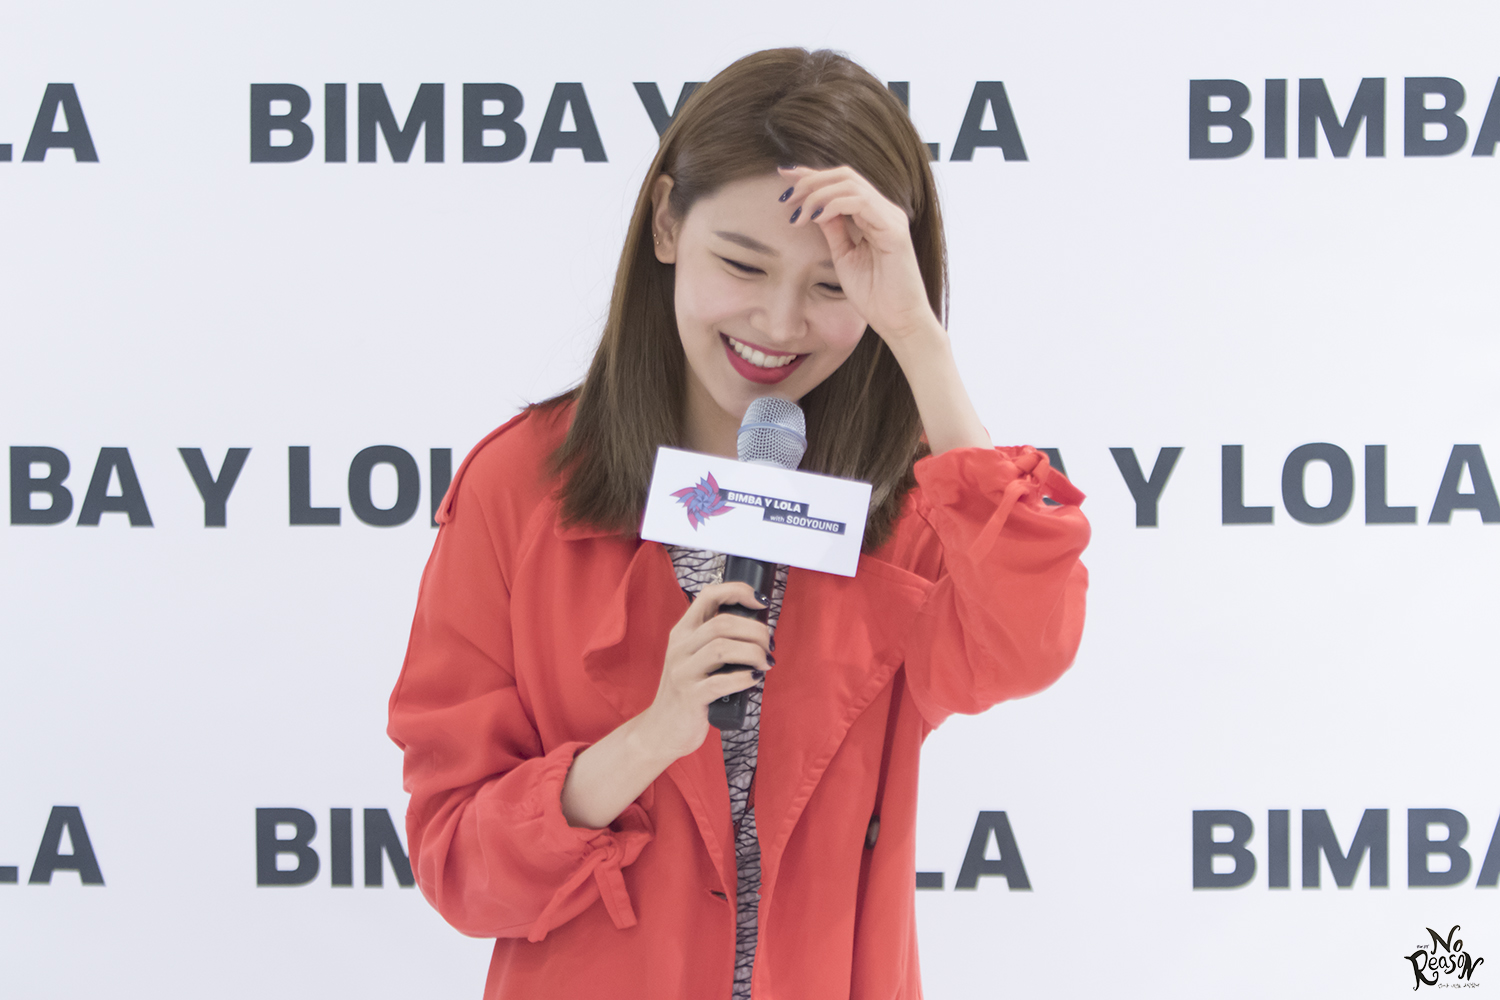 [PIC][14-04-2017]SooYoung tham dự buổi Fansign thứ 2 cho thương hiệu "BIMBA Y LOLA" vào trưa nay - Page 2 33642474110_ee731968ab_o